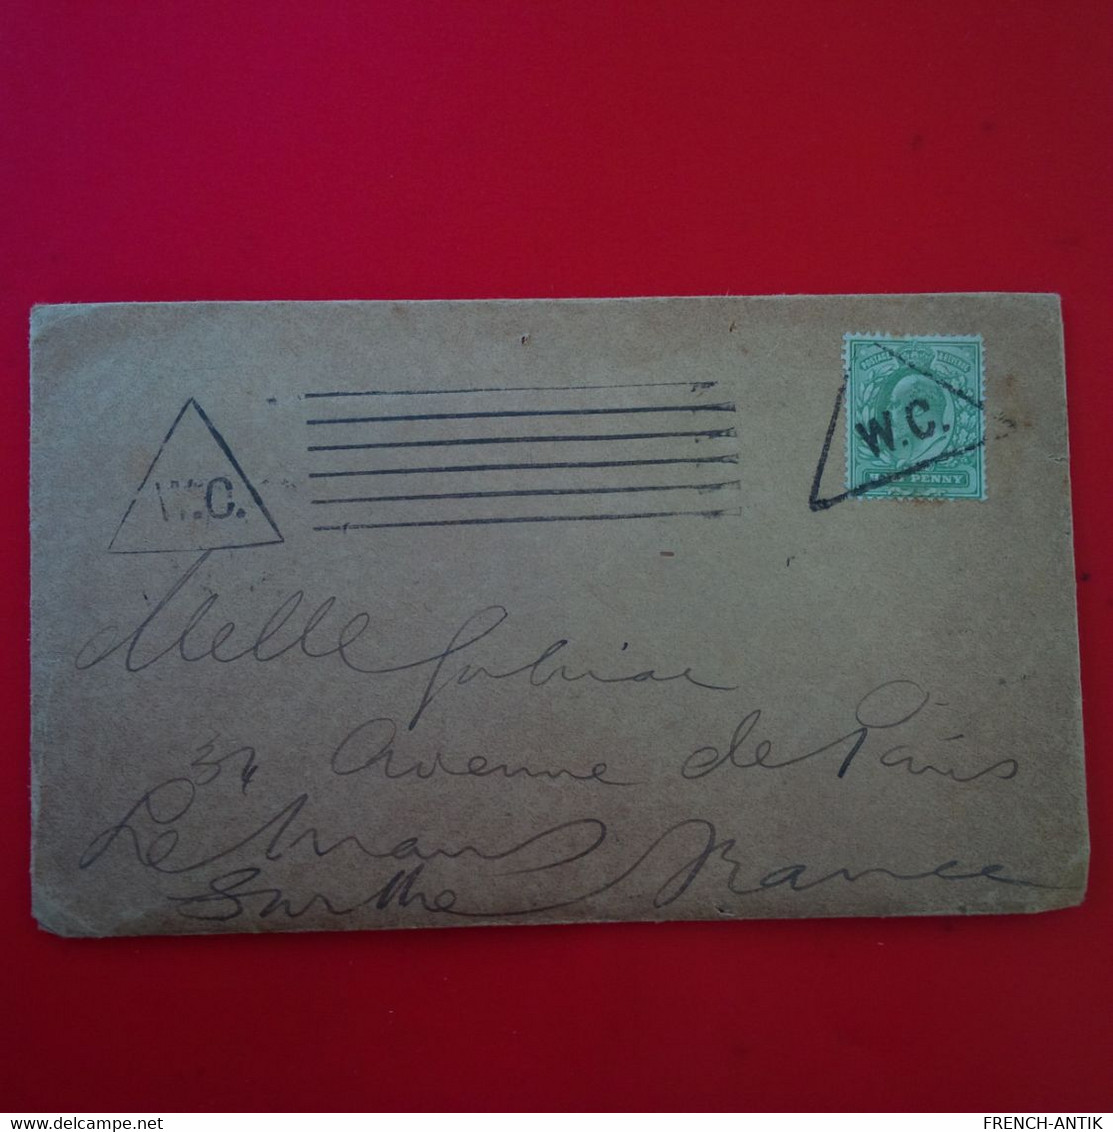 LETTRE GRANDE BRETAGNE CACHET W.C POUR LE MANS - Postmark Collection